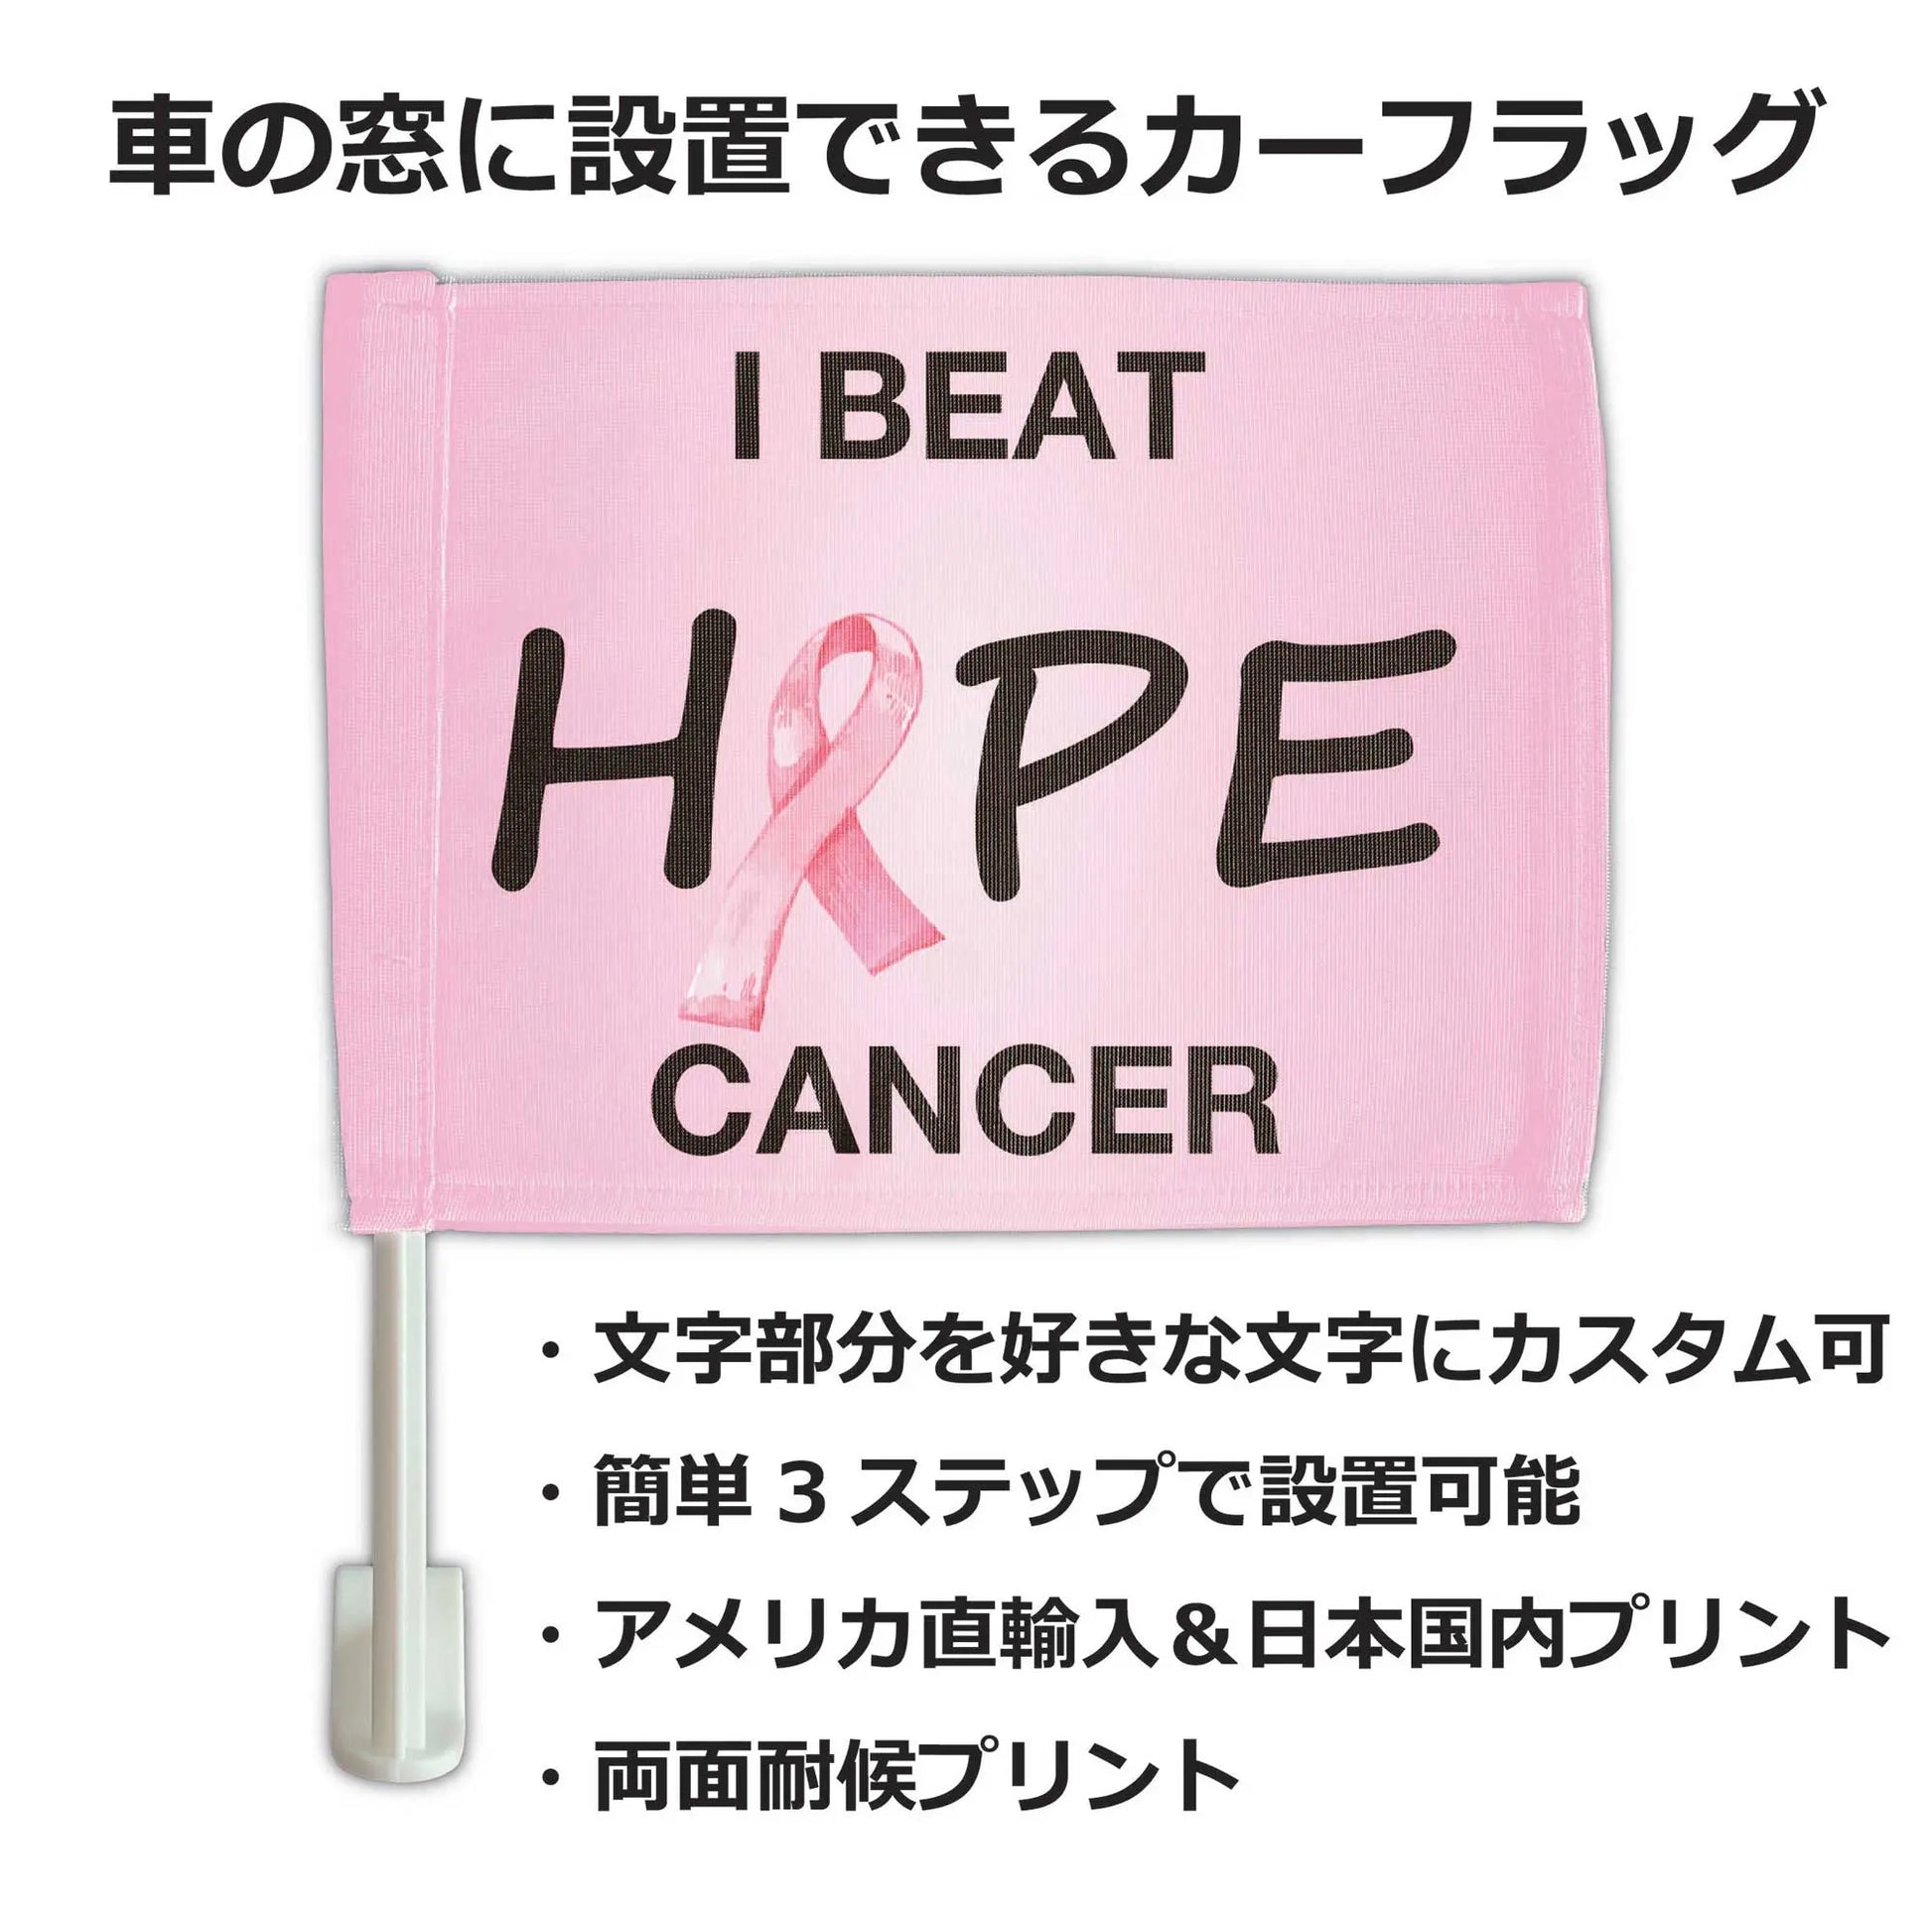 【カーフラッグ】CANCER/乳ガン啓発/自動車用オリジナルフラッグ・旗 PL8HERO